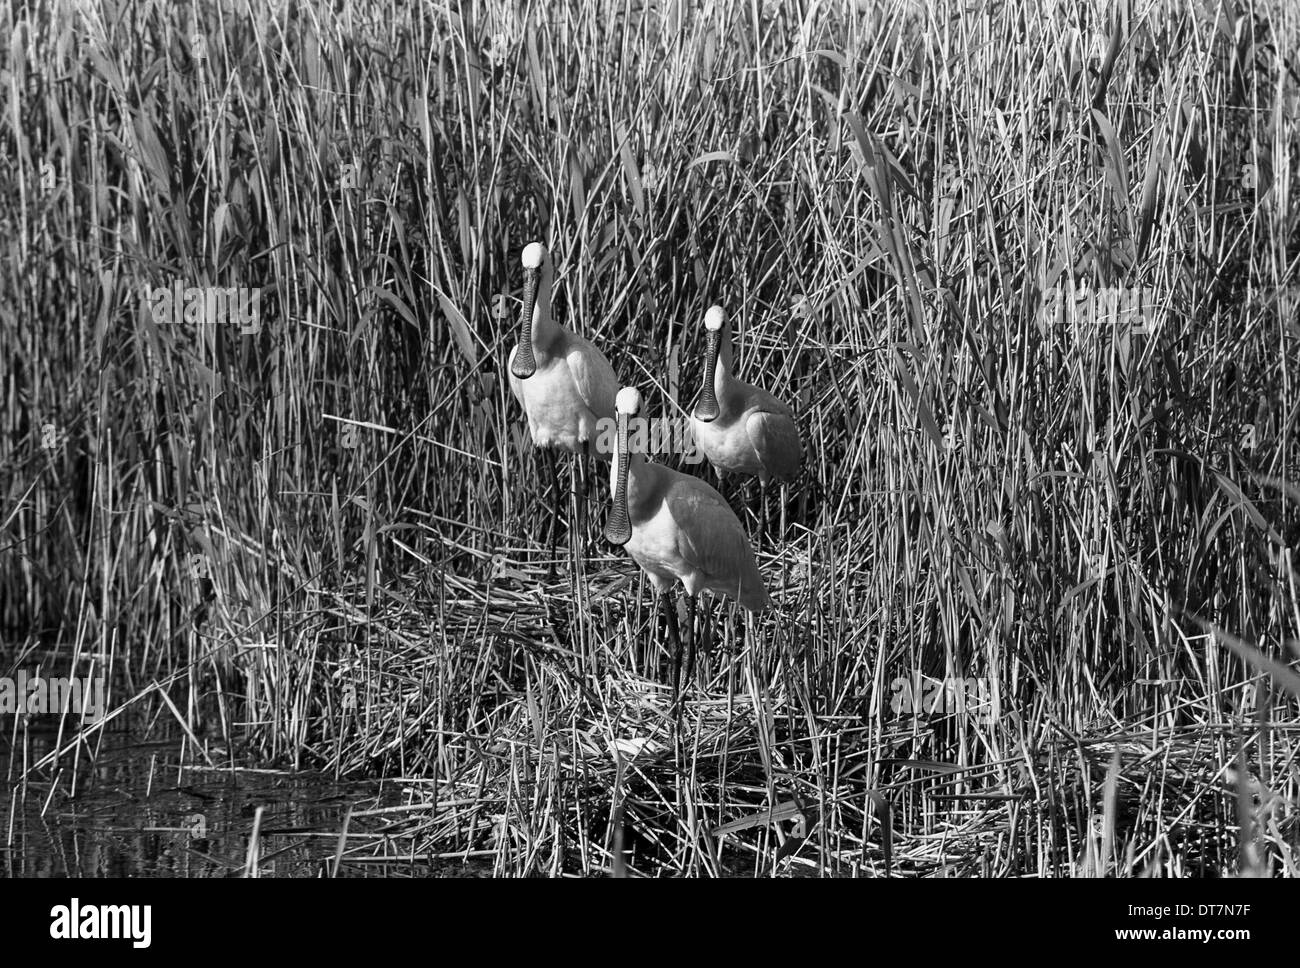 Le spatole, giugno 1961, Marchio 17 Fotocamera, Tele-tessar 32cm lente, F32, 1/50, Foto Stock